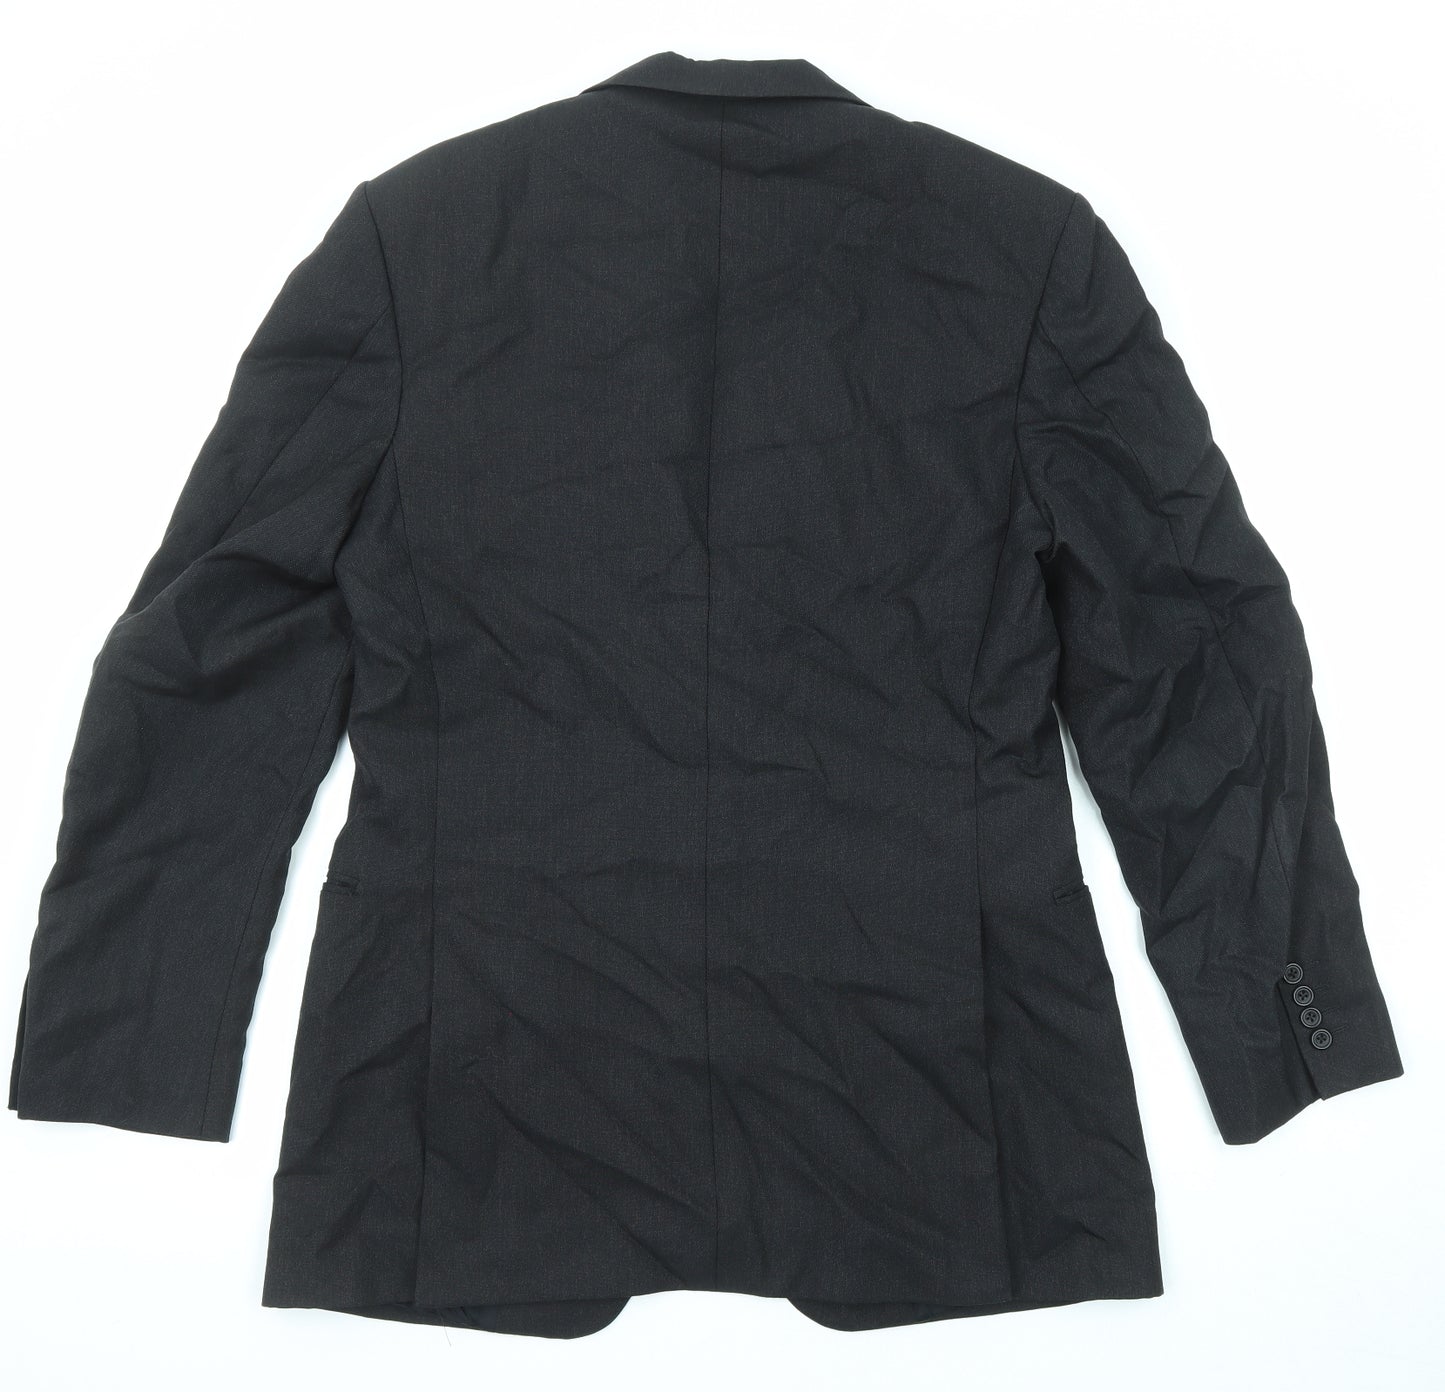 Ede & Ravenscroft Mens Black Wool Jacket Suit Jacket Size 42 Regular